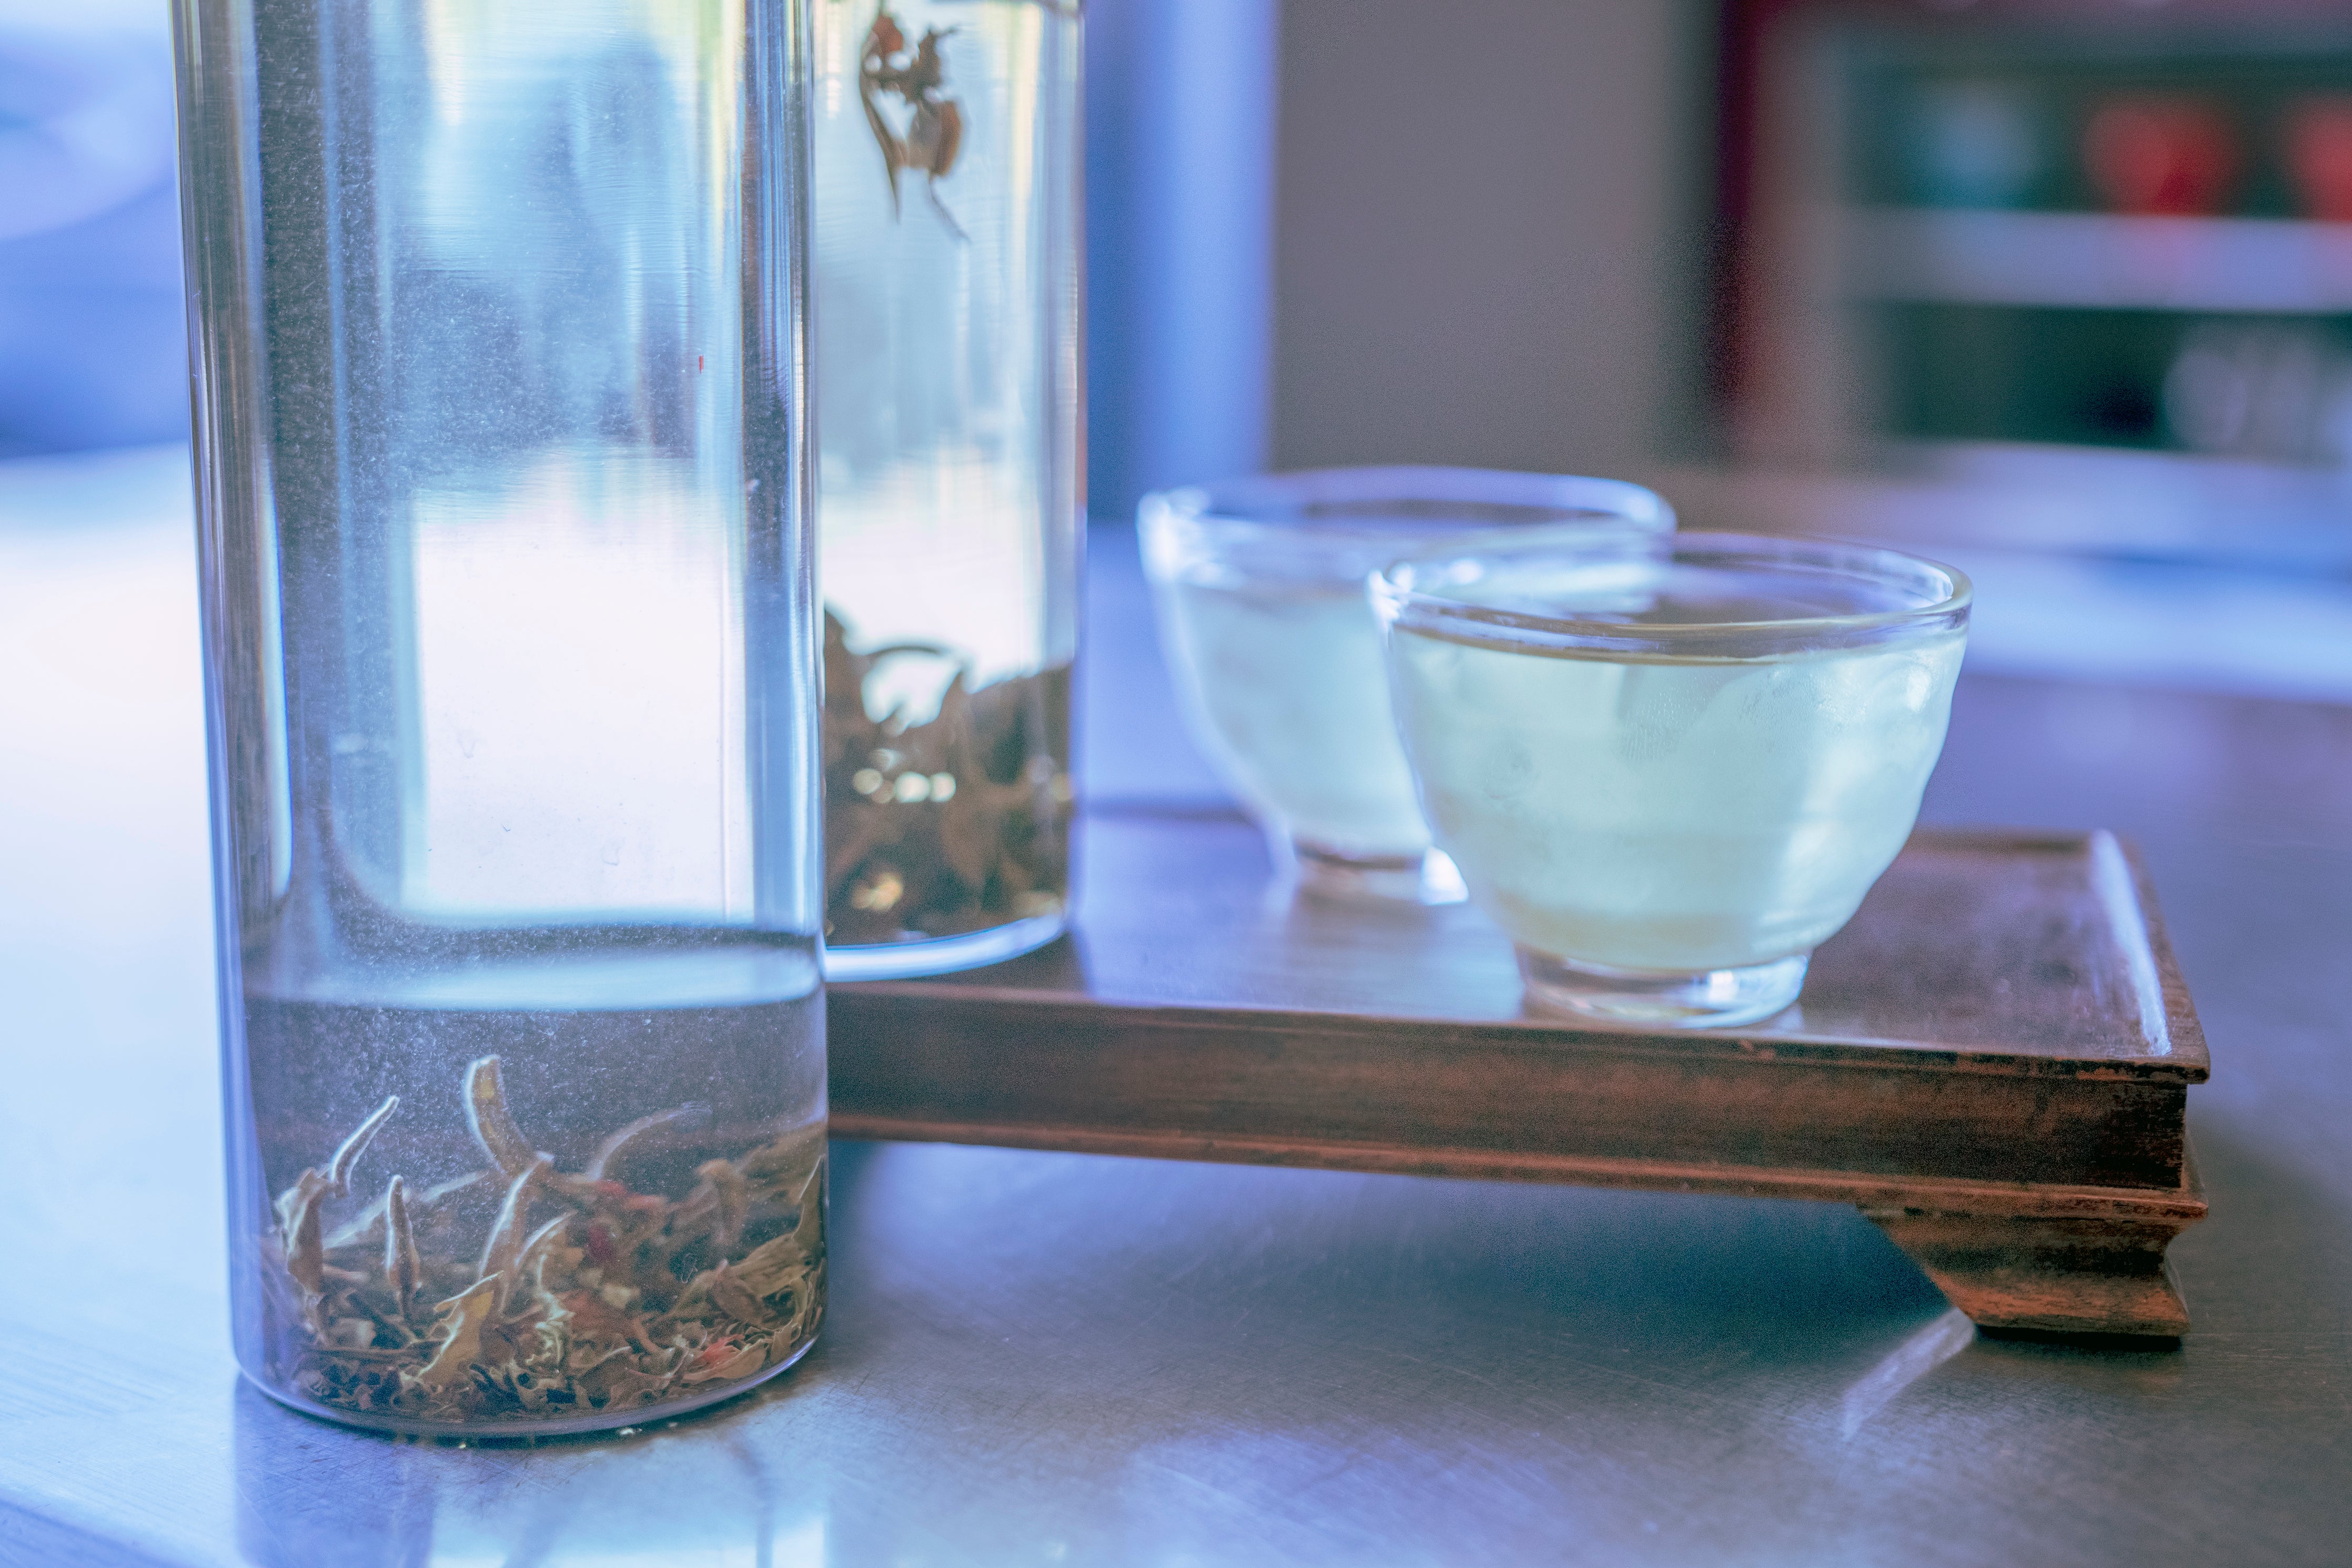 Hario Cold brew filter-in-bottle, Zen Tea